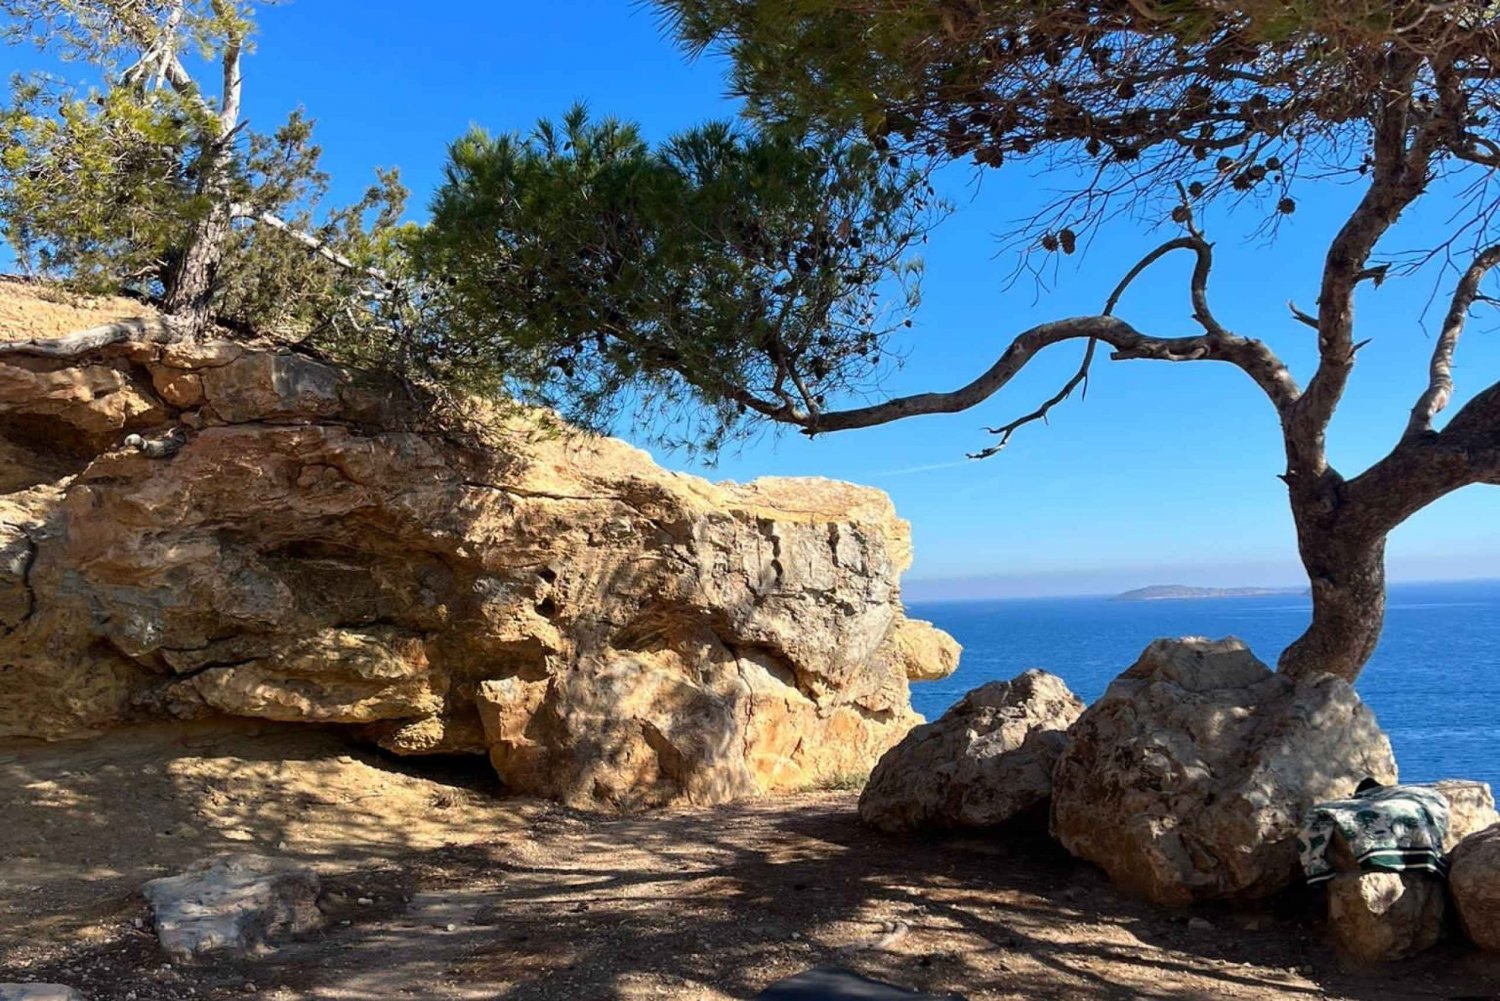 Ibiza ; Séance de respiration guidée dans la nature